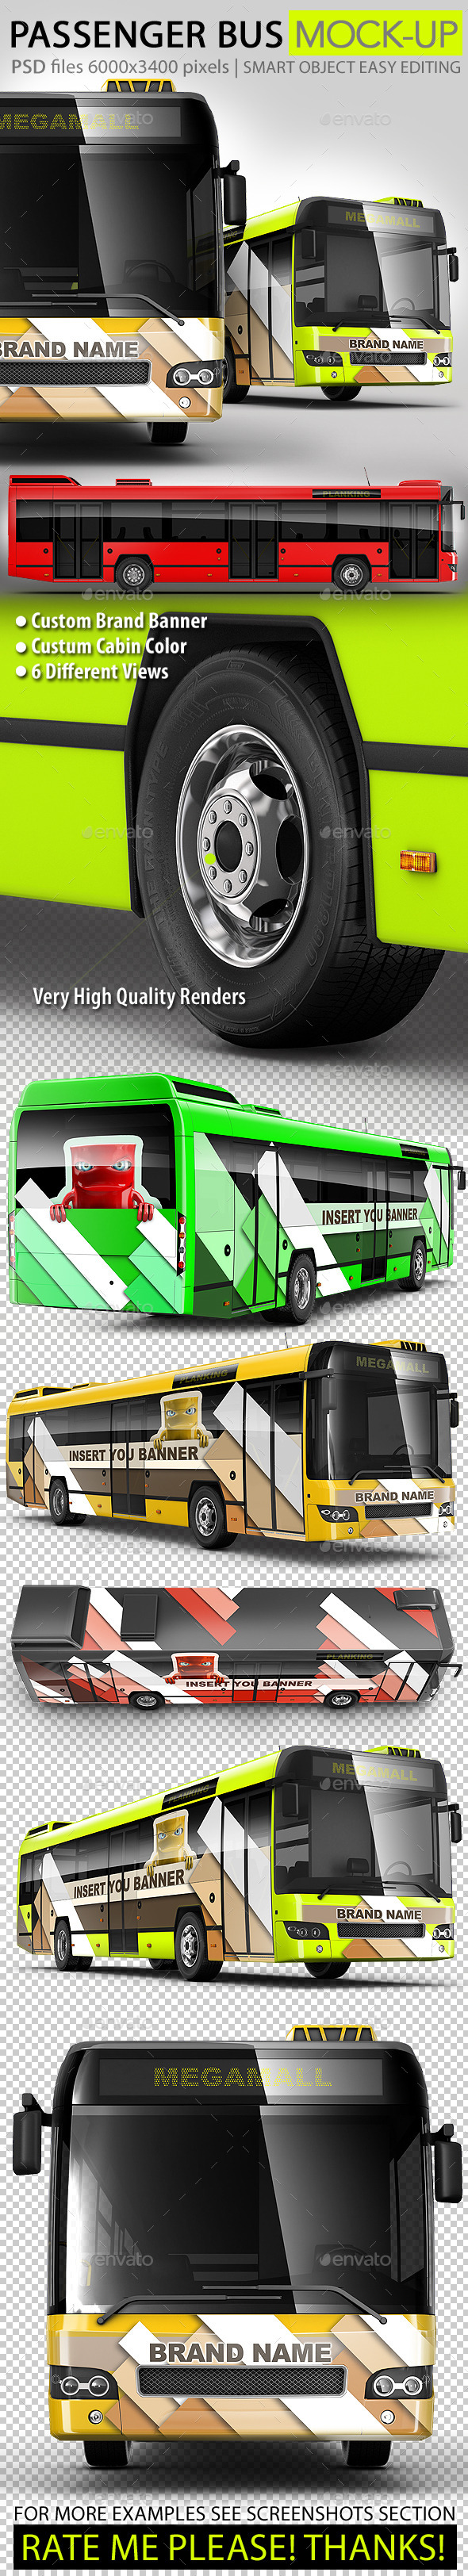 Passenger bus, Coach bus mock-up